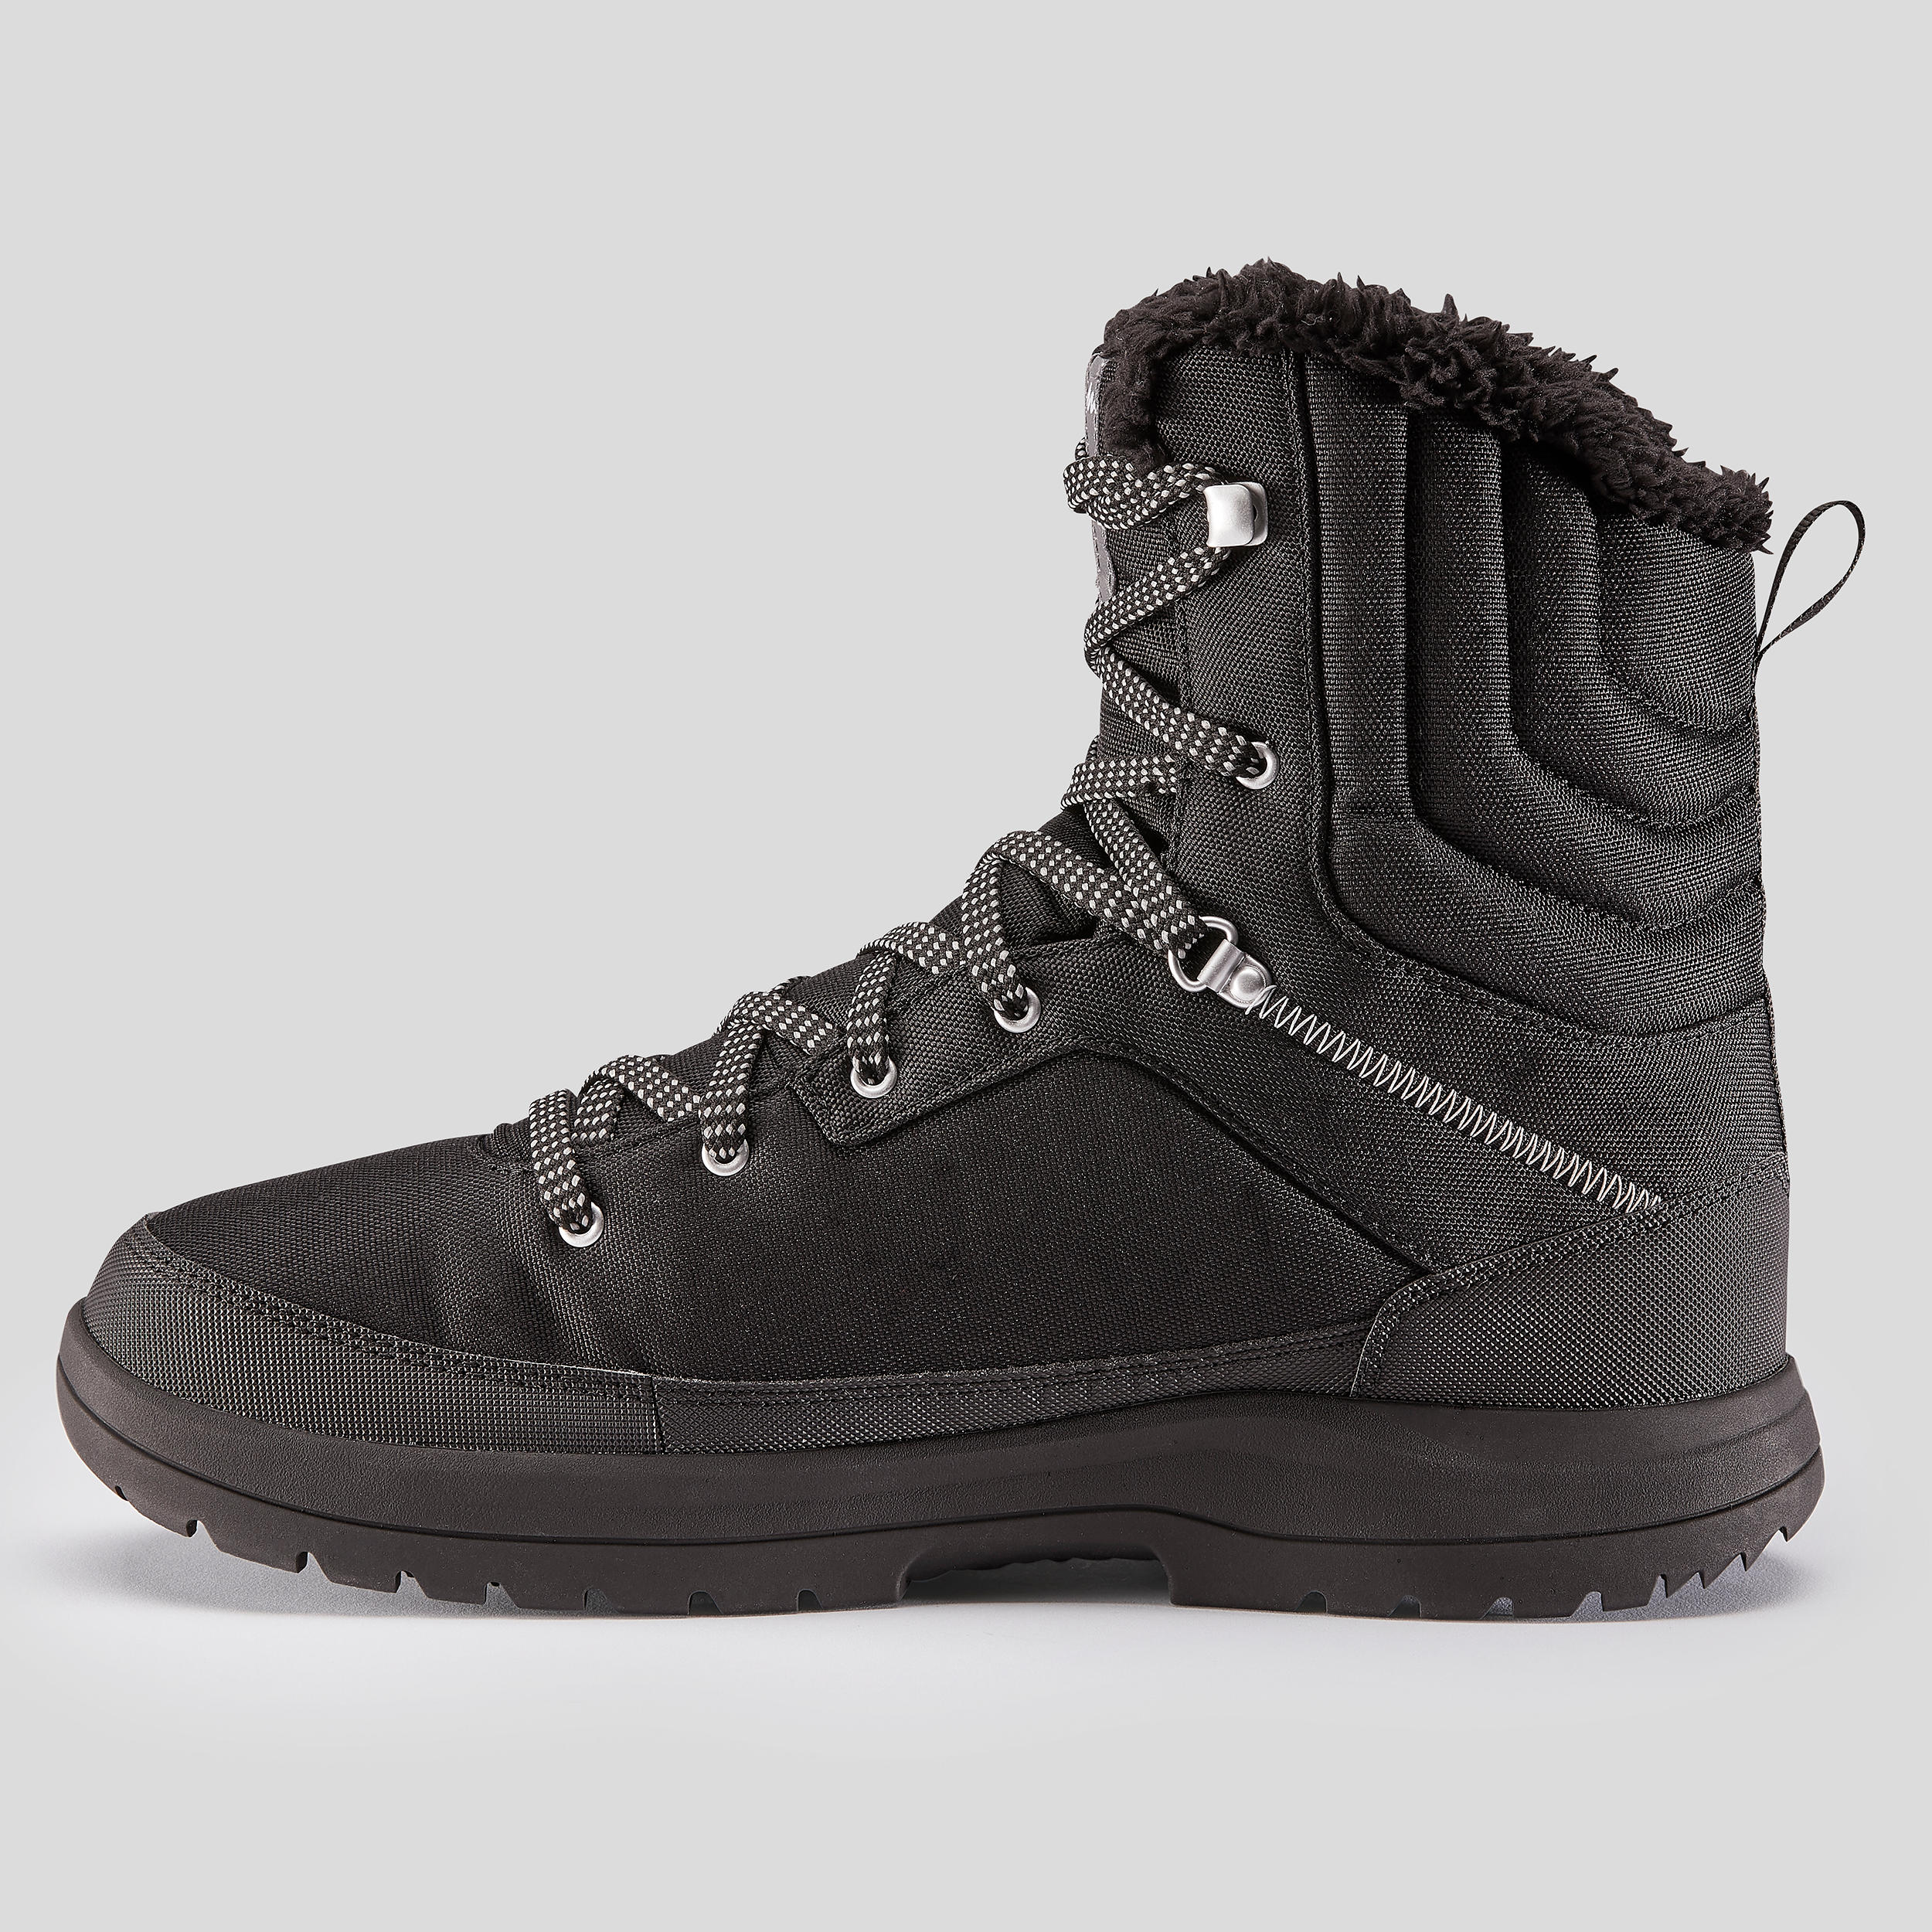 mens black waterproof hiking boots